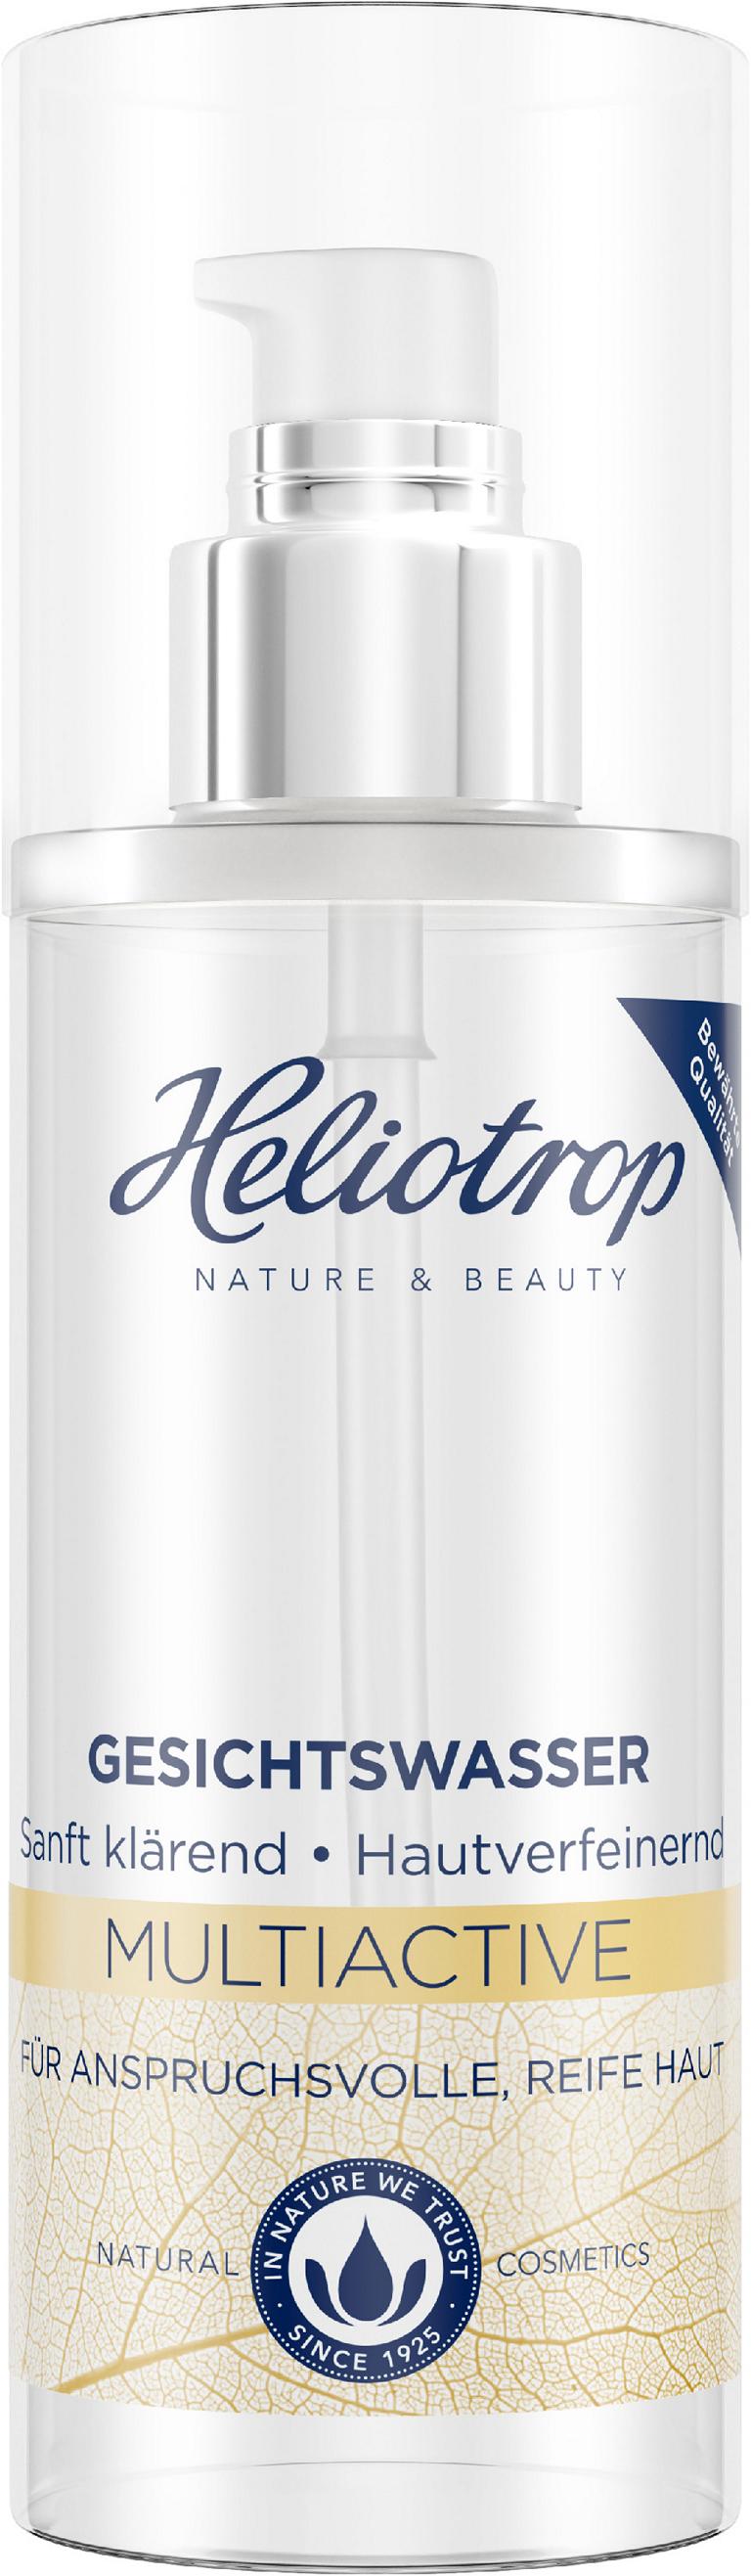 Heliotrop Multiactive Gesichtswasser 150ml